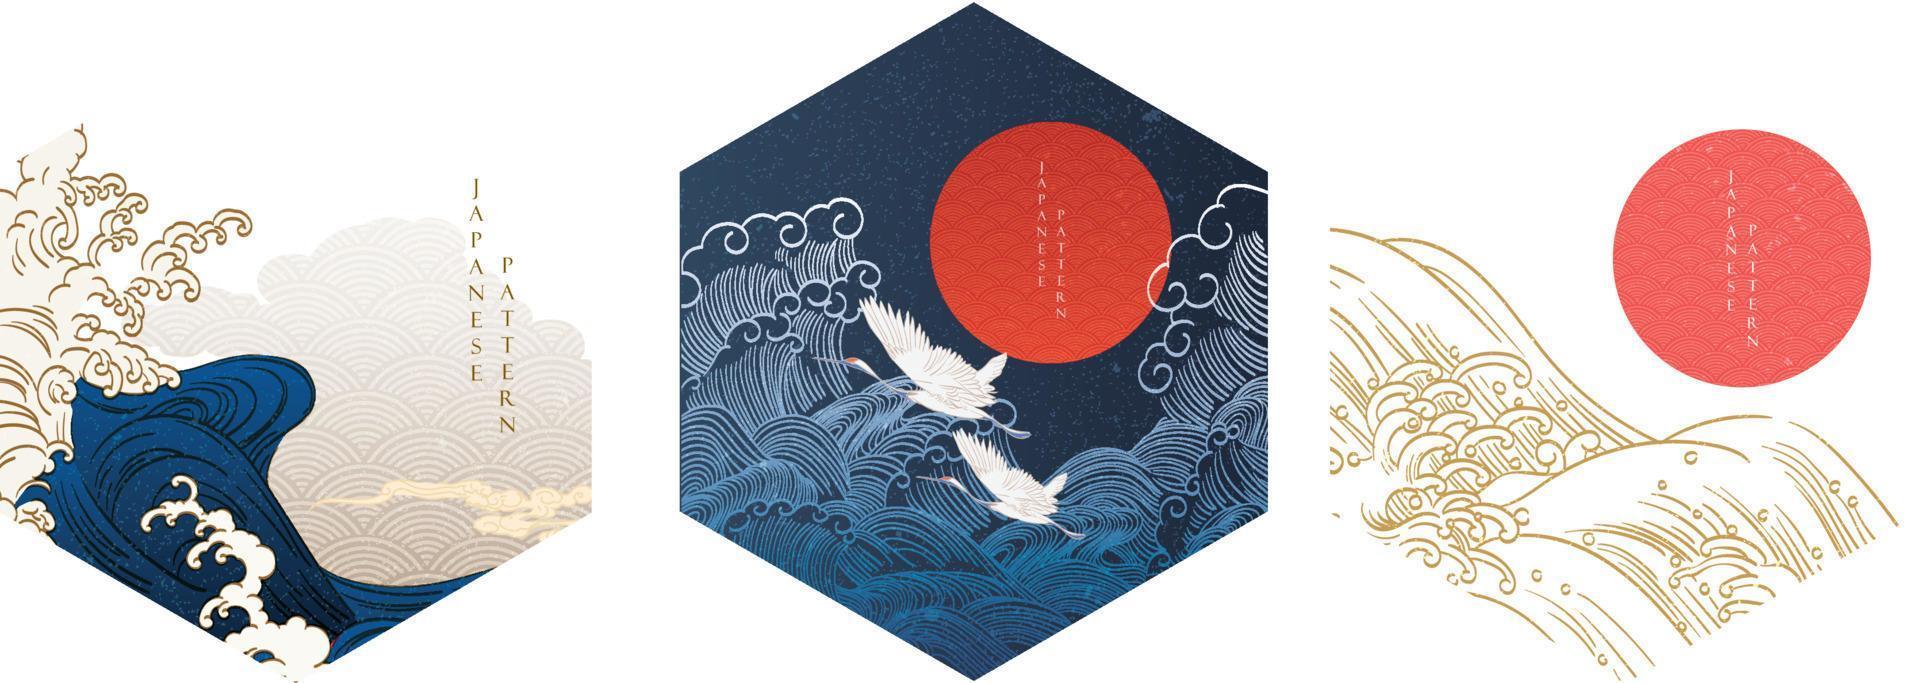 japanischer hintergrund mit handgezeichneten wellenelementen im geometrischen formvektor. rote Sonne und Mond mit abstraktem Linienmuster. Template-Design im orientalischen Stil. vektor